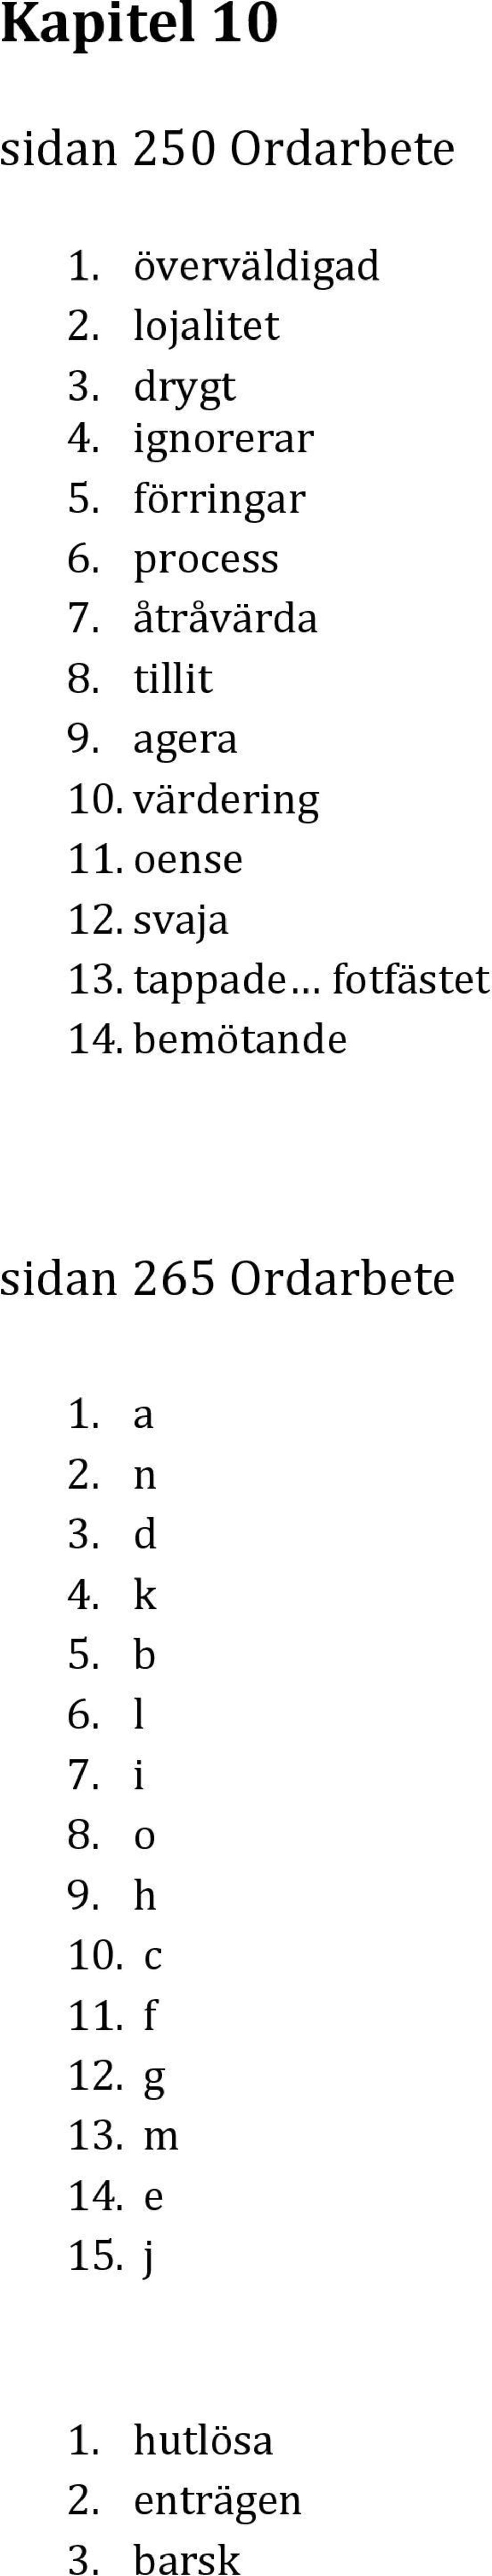 svaja 13. tappade fotfästet 14. bemötande sidan 265 Ordarbete 1. a 2. n 3. d 4. k 5.